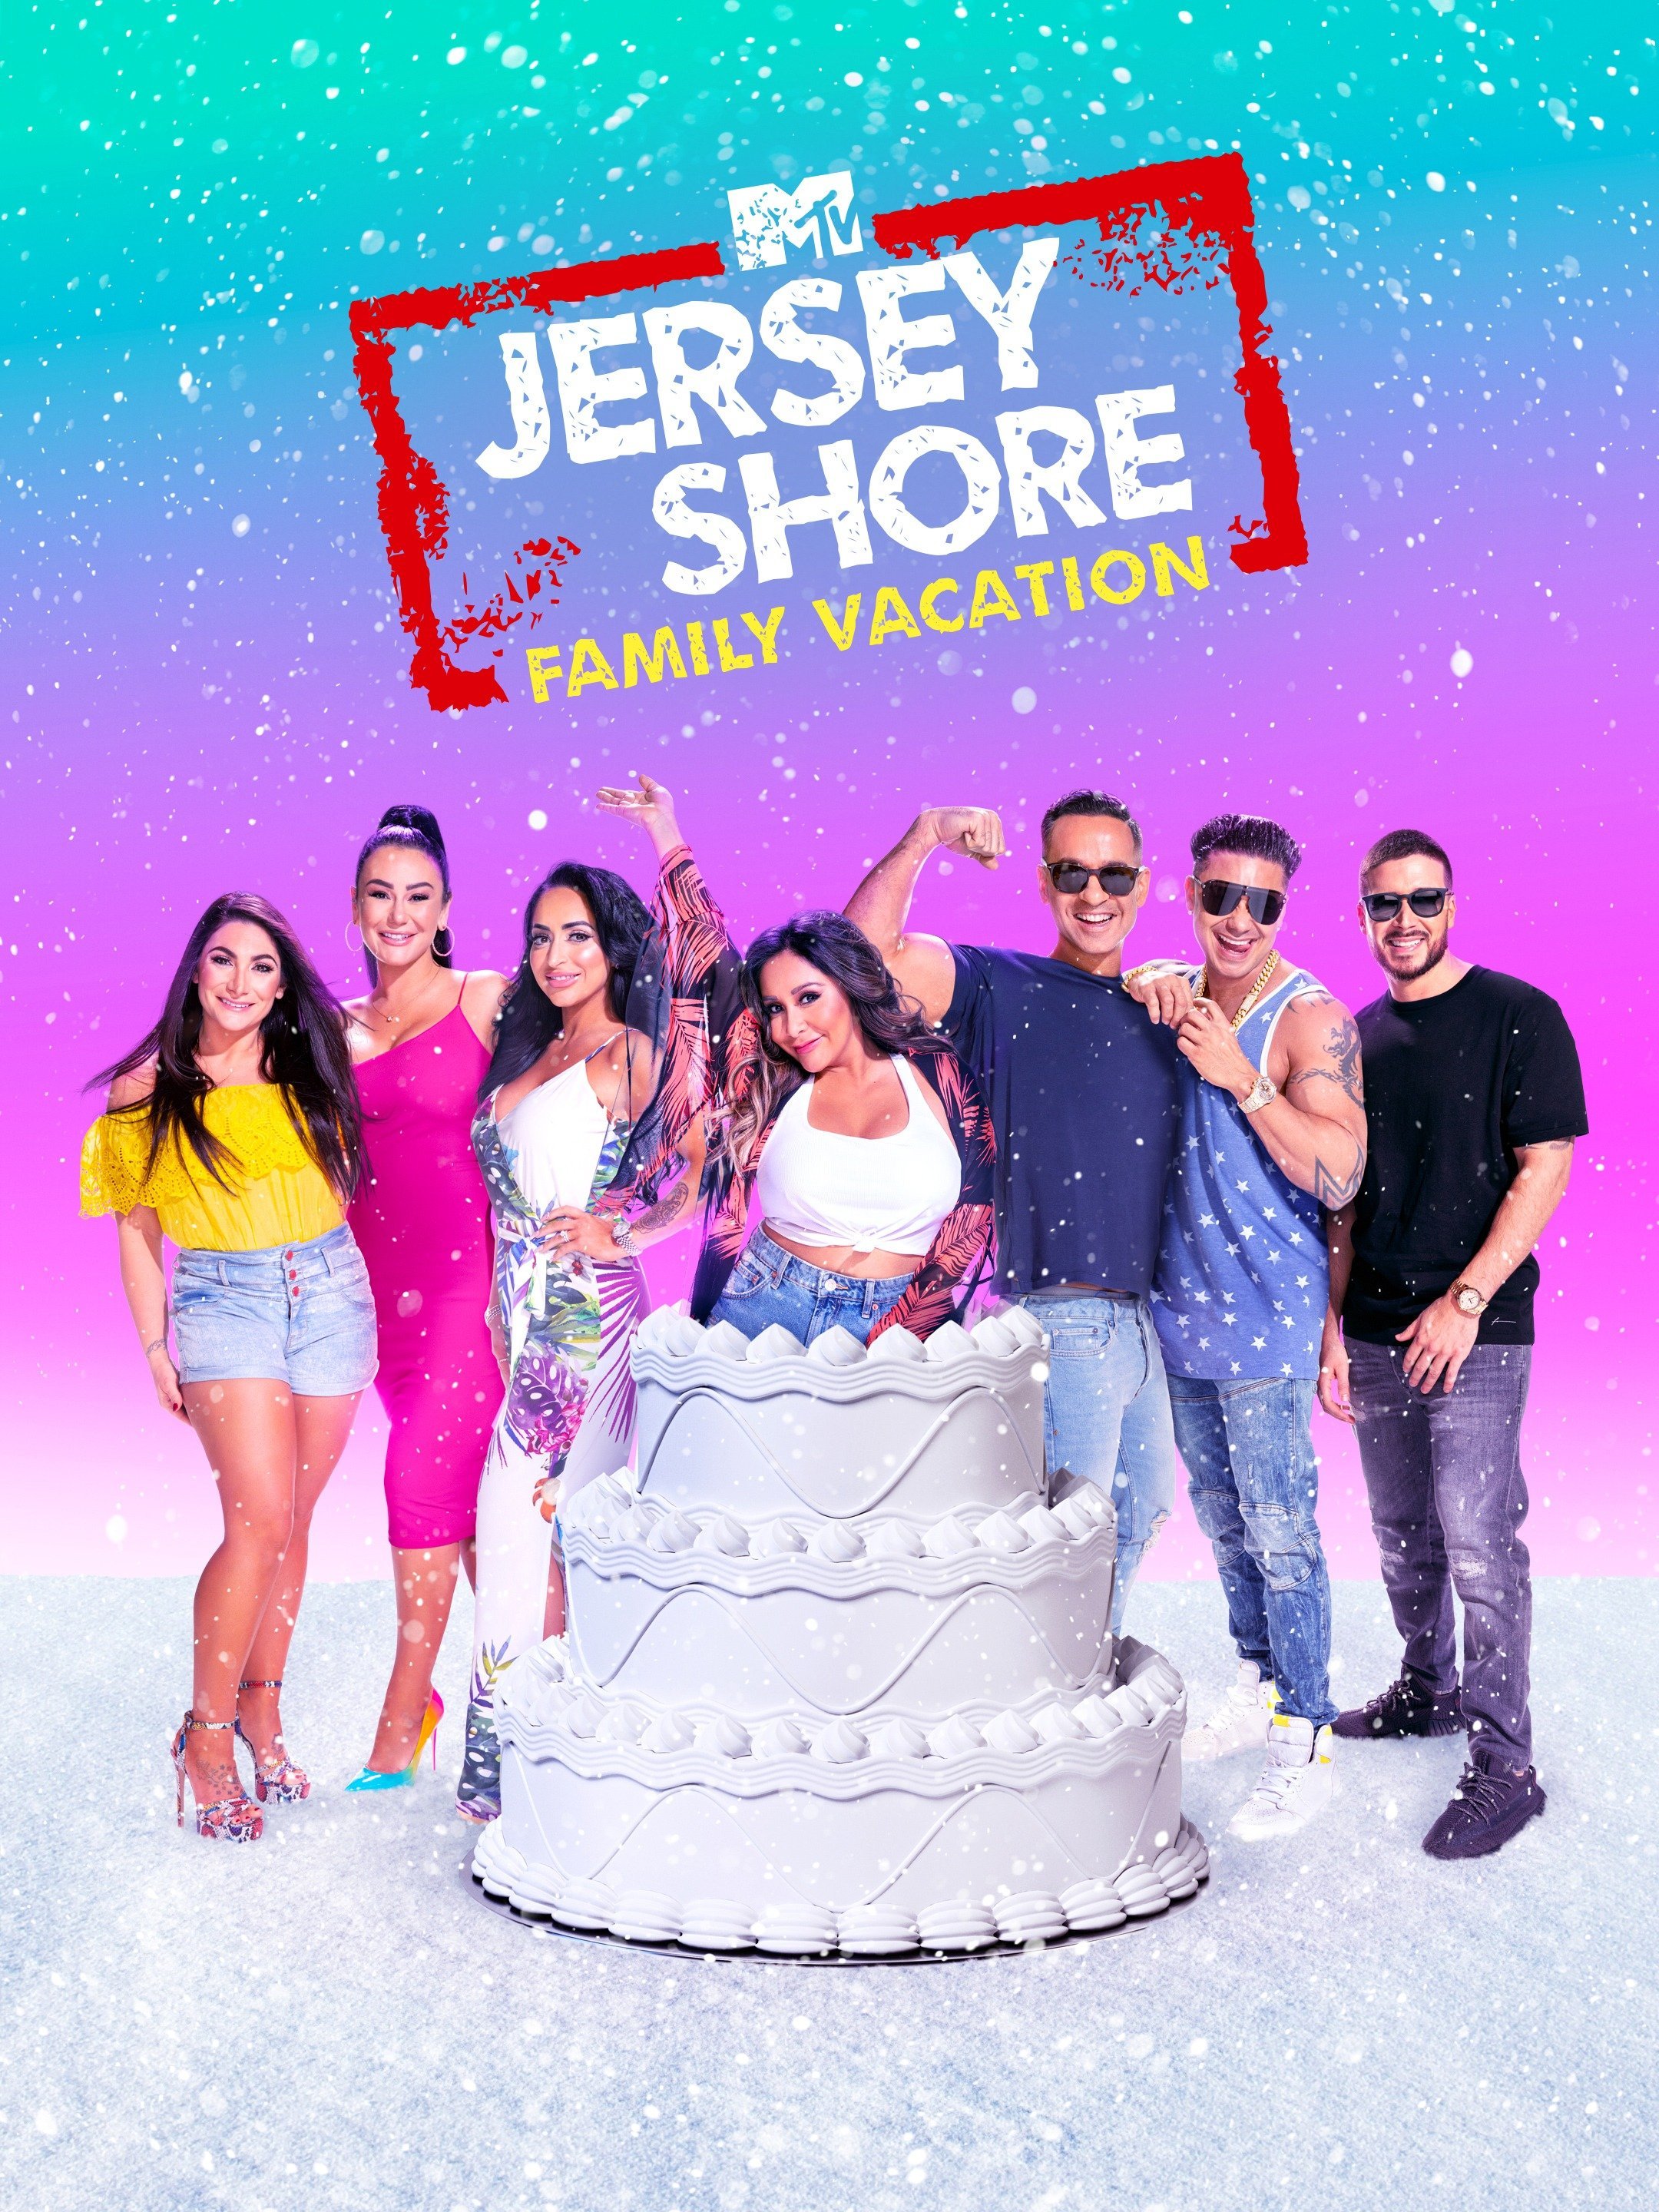 Esta llorando Emular Mamut Watch Jersey Shore Family Vacation Online - Stream Full Episodes